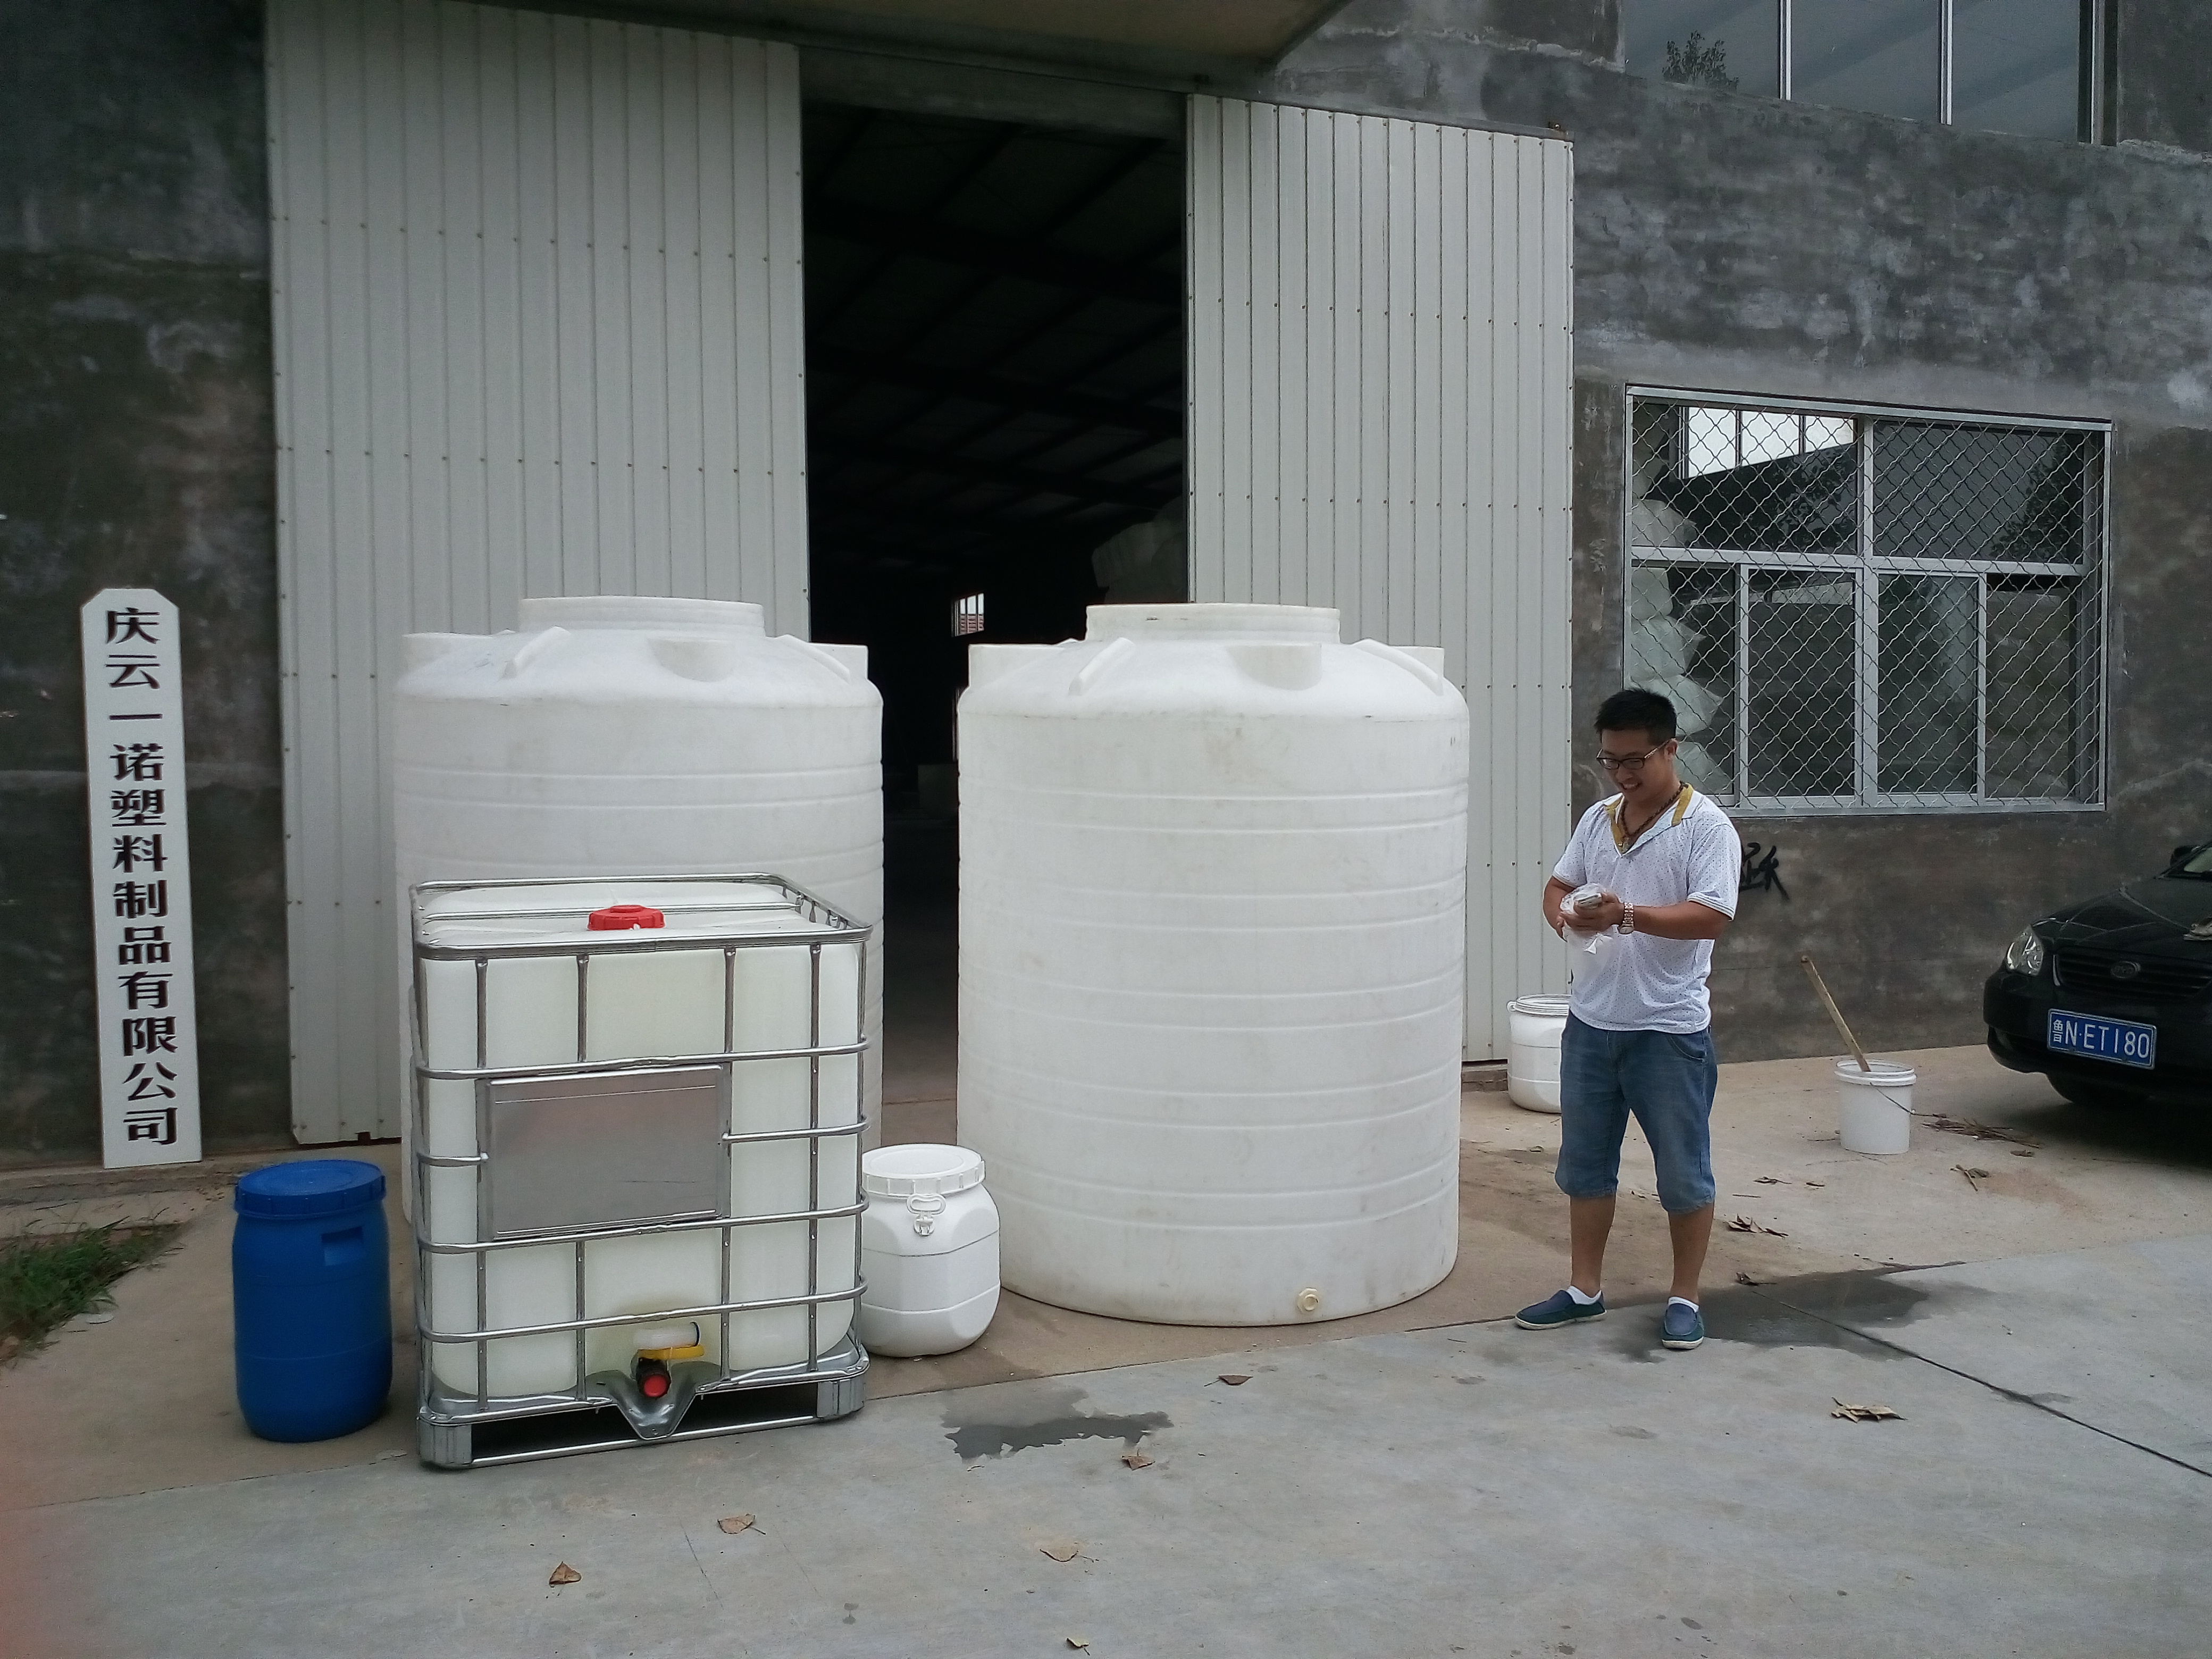 供应内蒙古5吨塑料桶包头 5吨水塔西安 5T储罐大连 5T塑料桶 5000L塑料桶